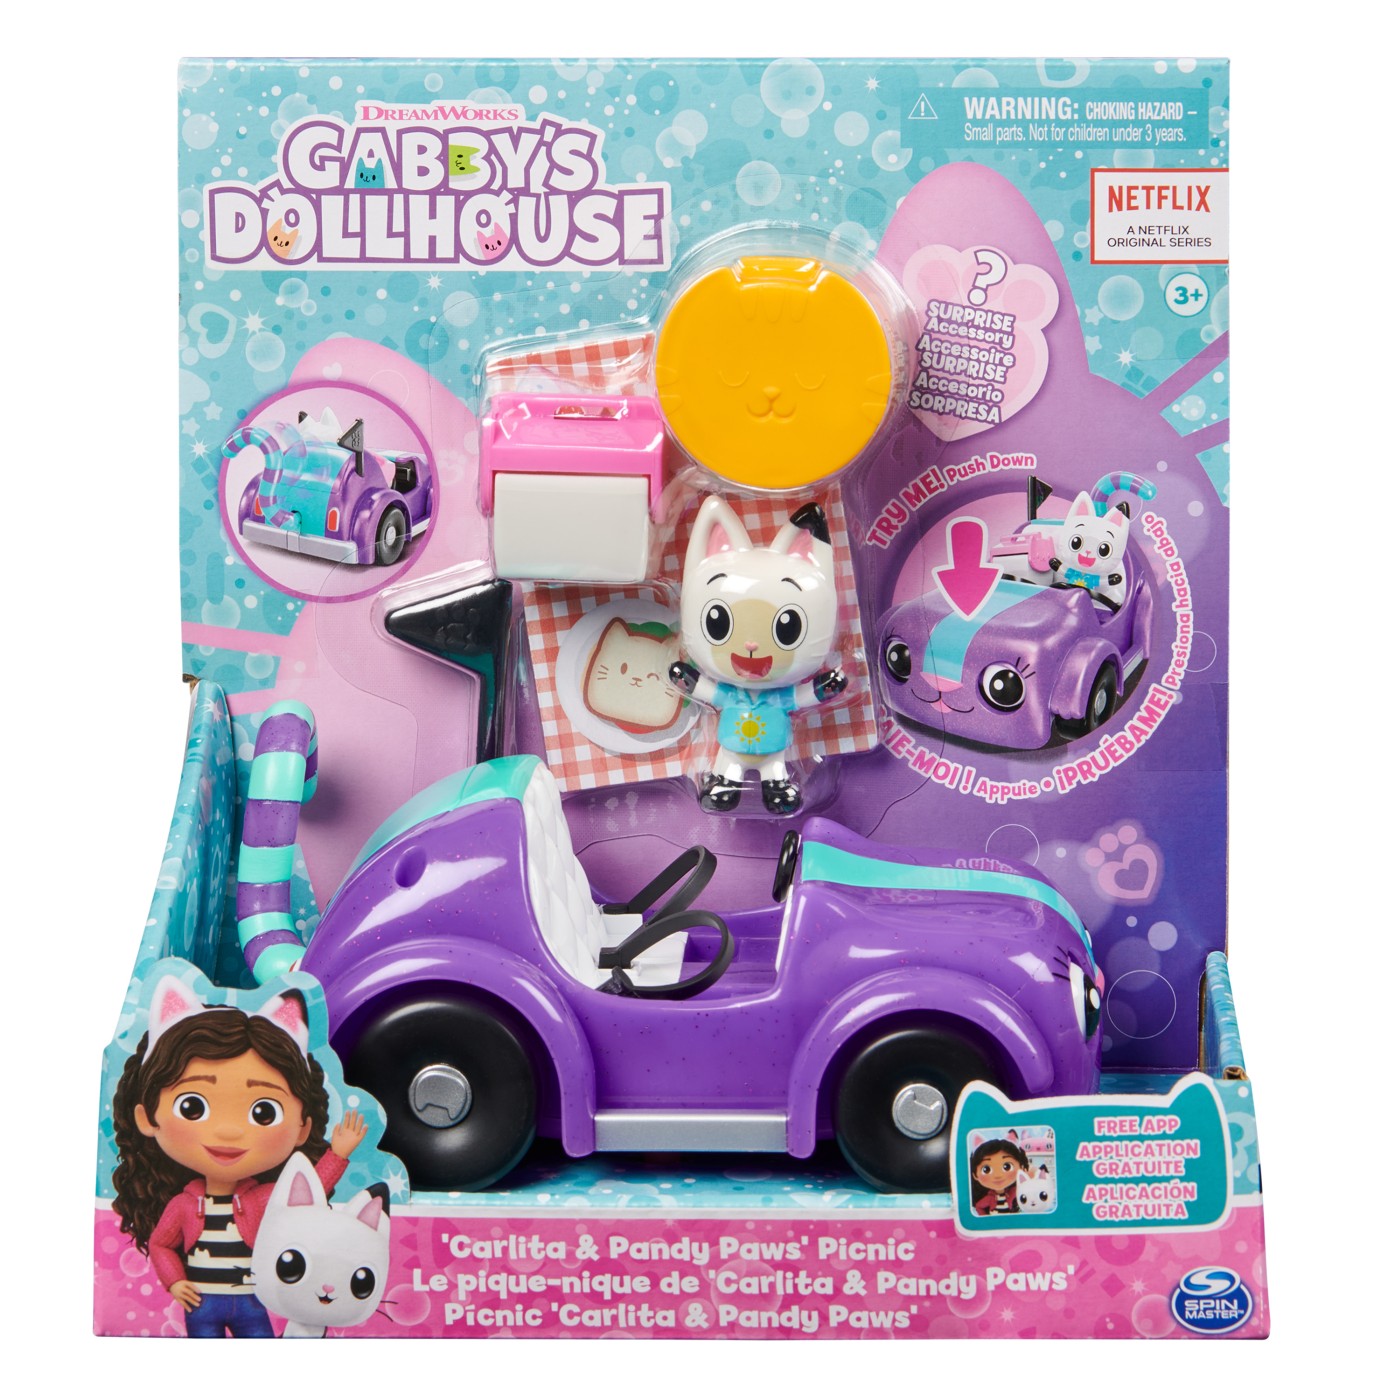 Vehicul cu figurina, Gabby's Dollhouse